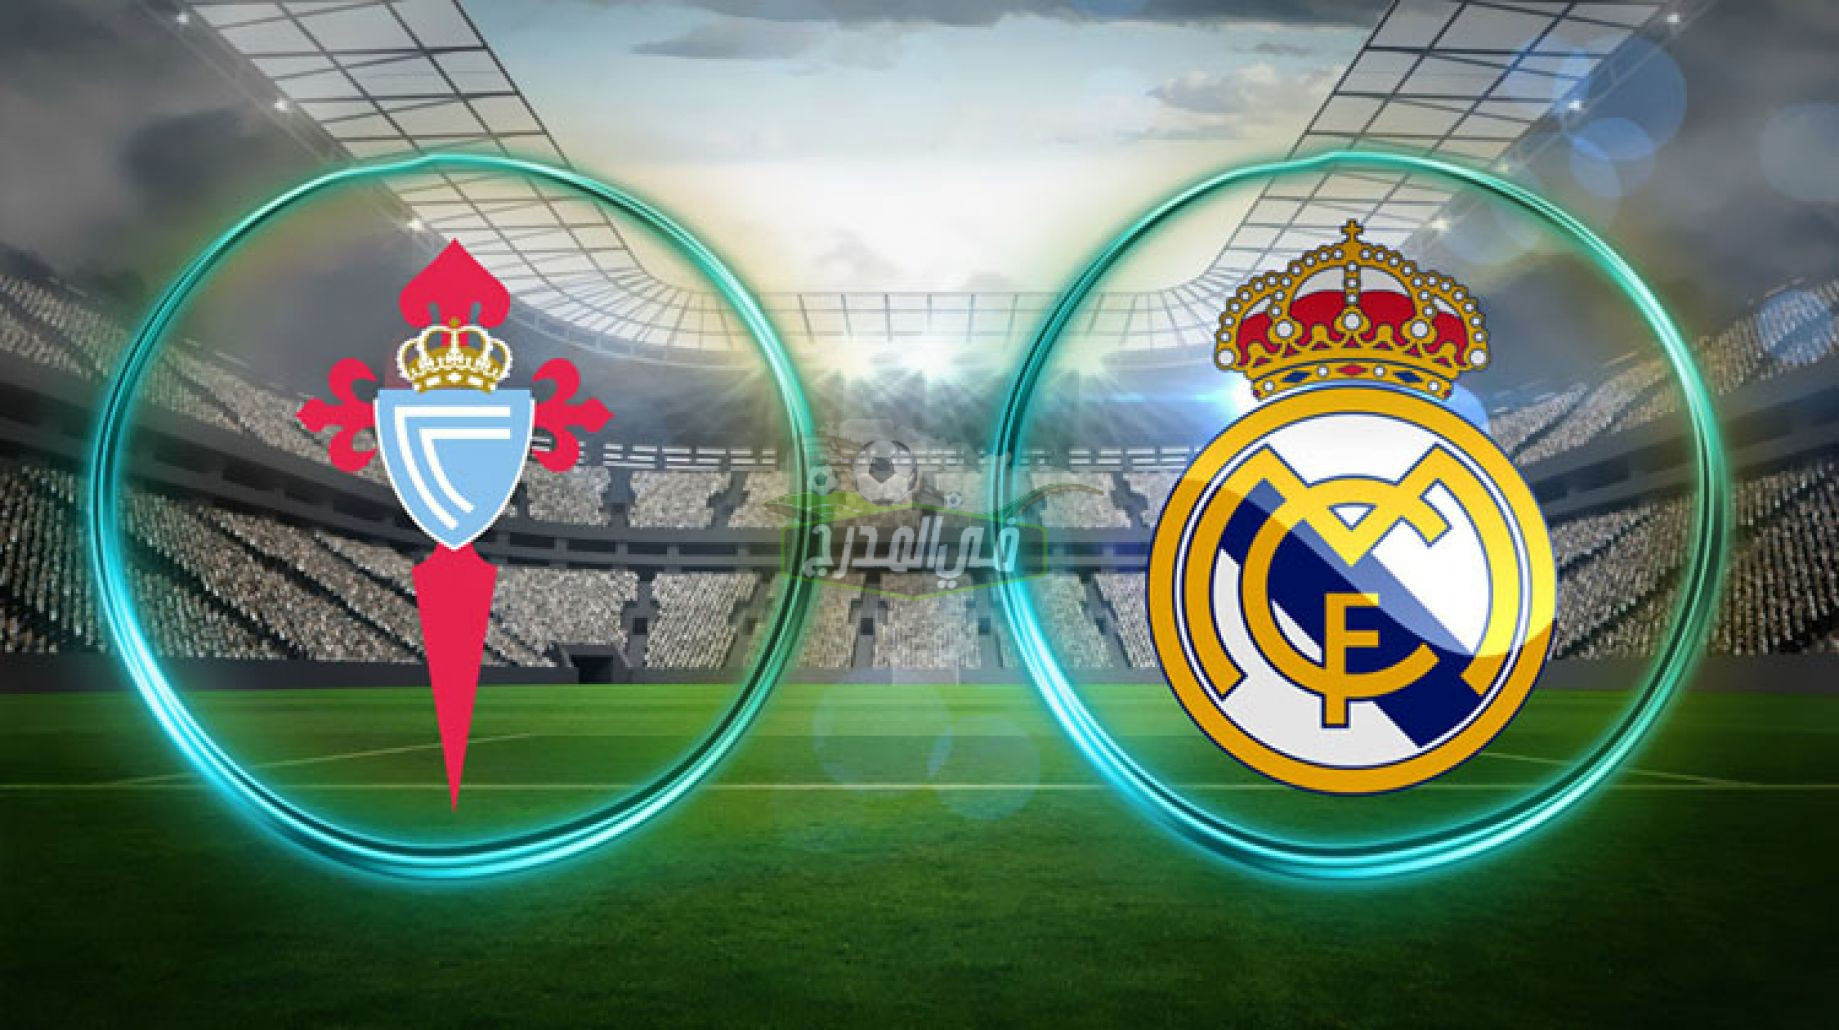 موعد مباراة ريال مدريد ضد سيلتا فيجو Real madrid vs Celta de vigo في الدوري الاسباني والقنوات الناقلة لها